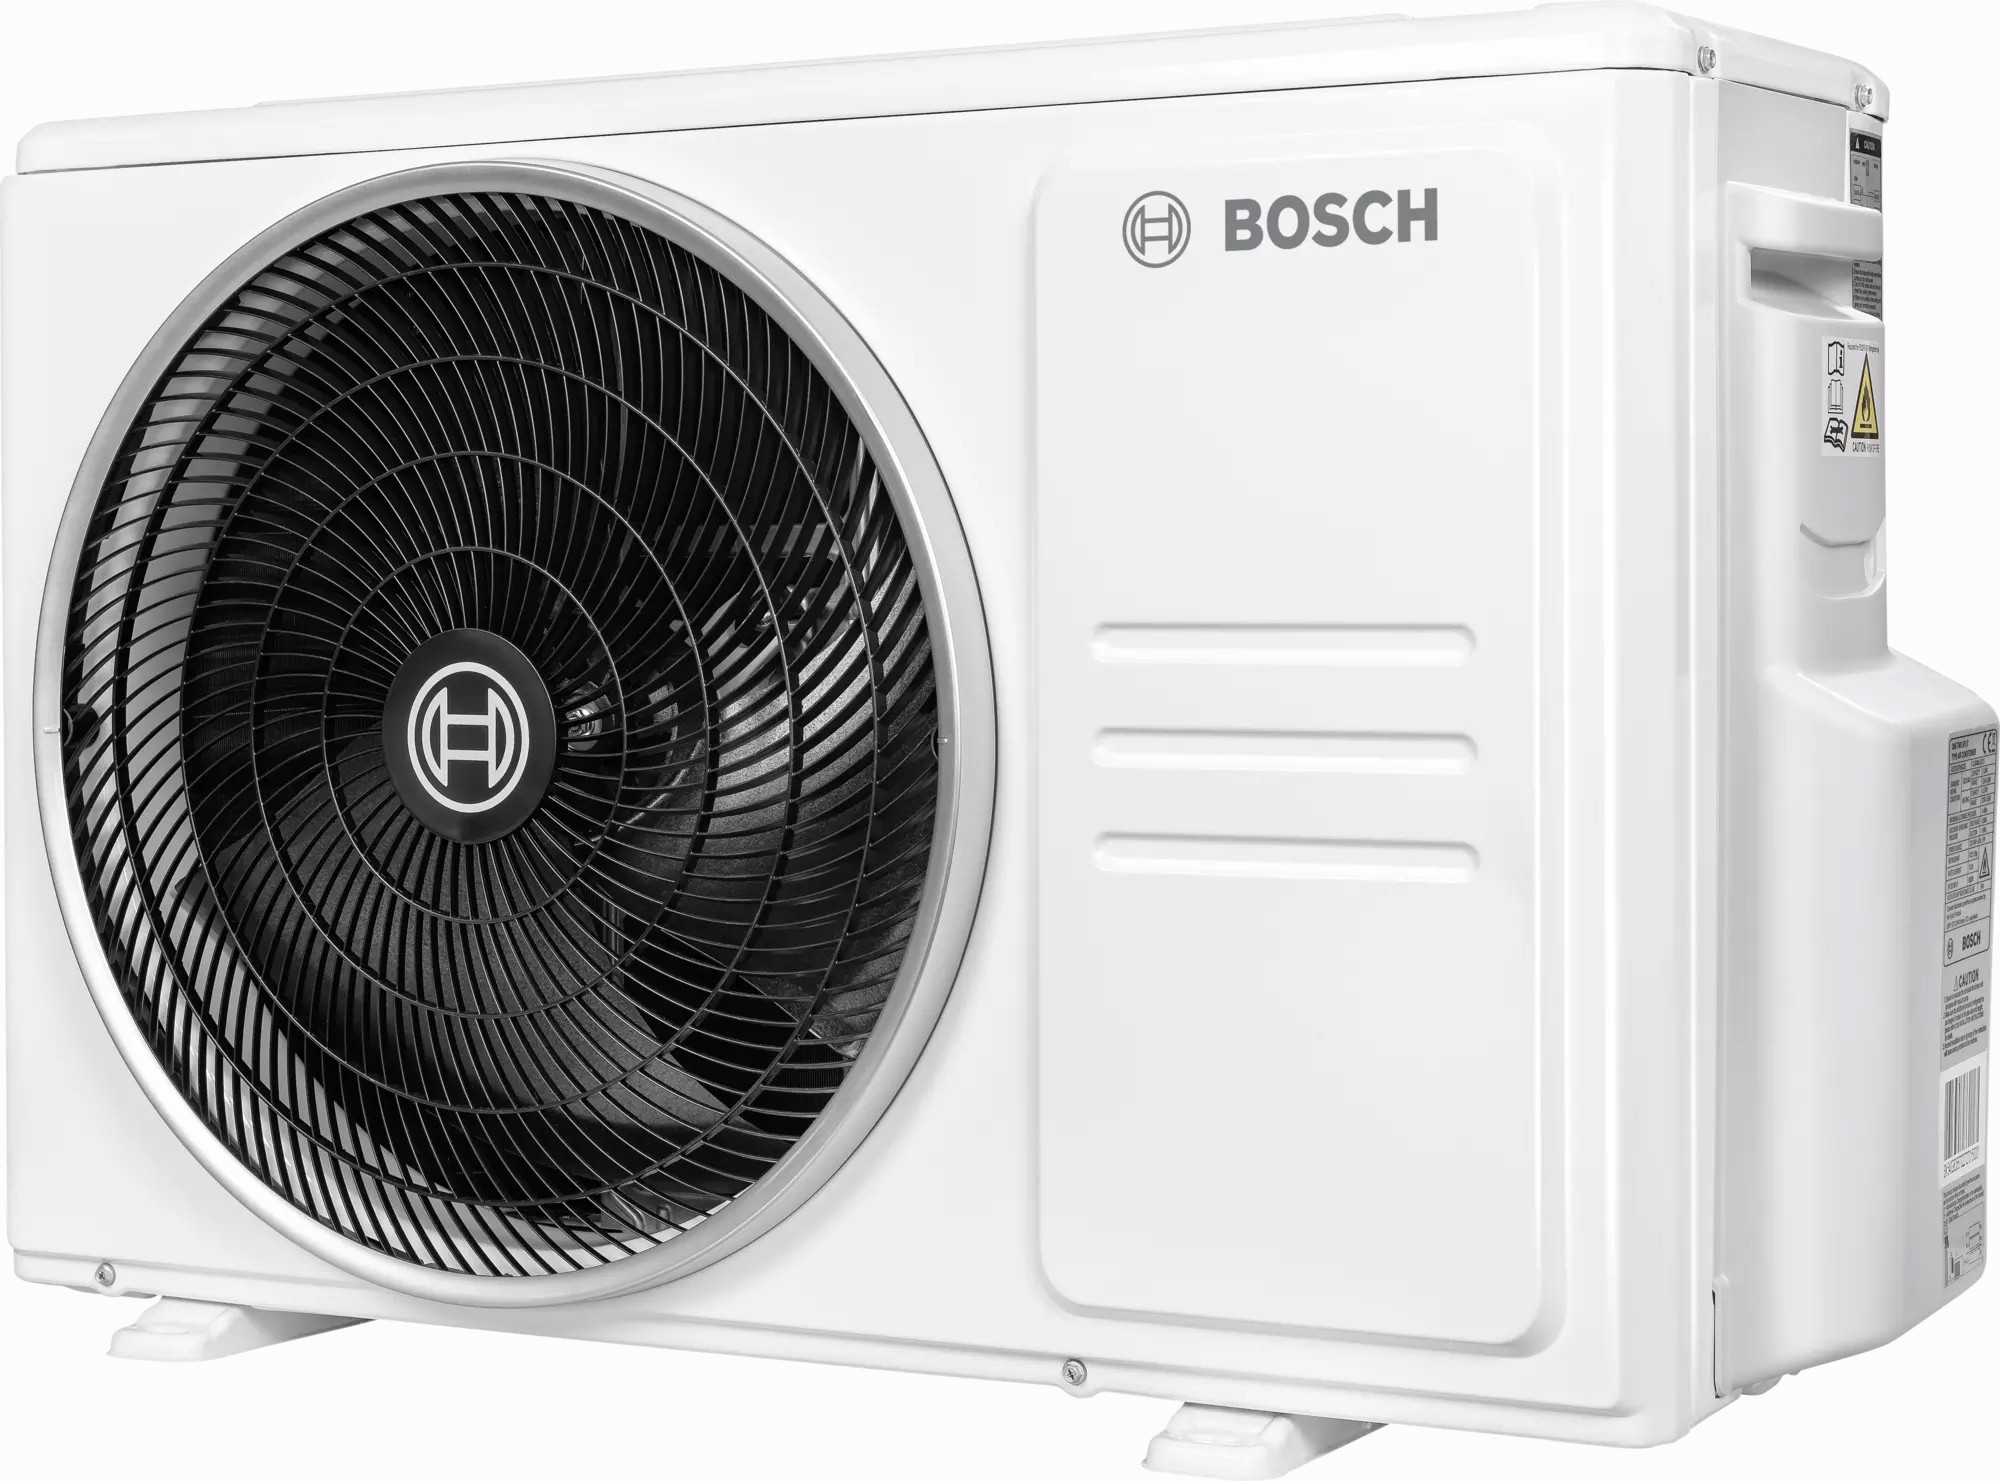 Наружный блок мультисплит-системы Bosch CL5000M 62/3 E, 6,2 кВт отзывы - изображения 5